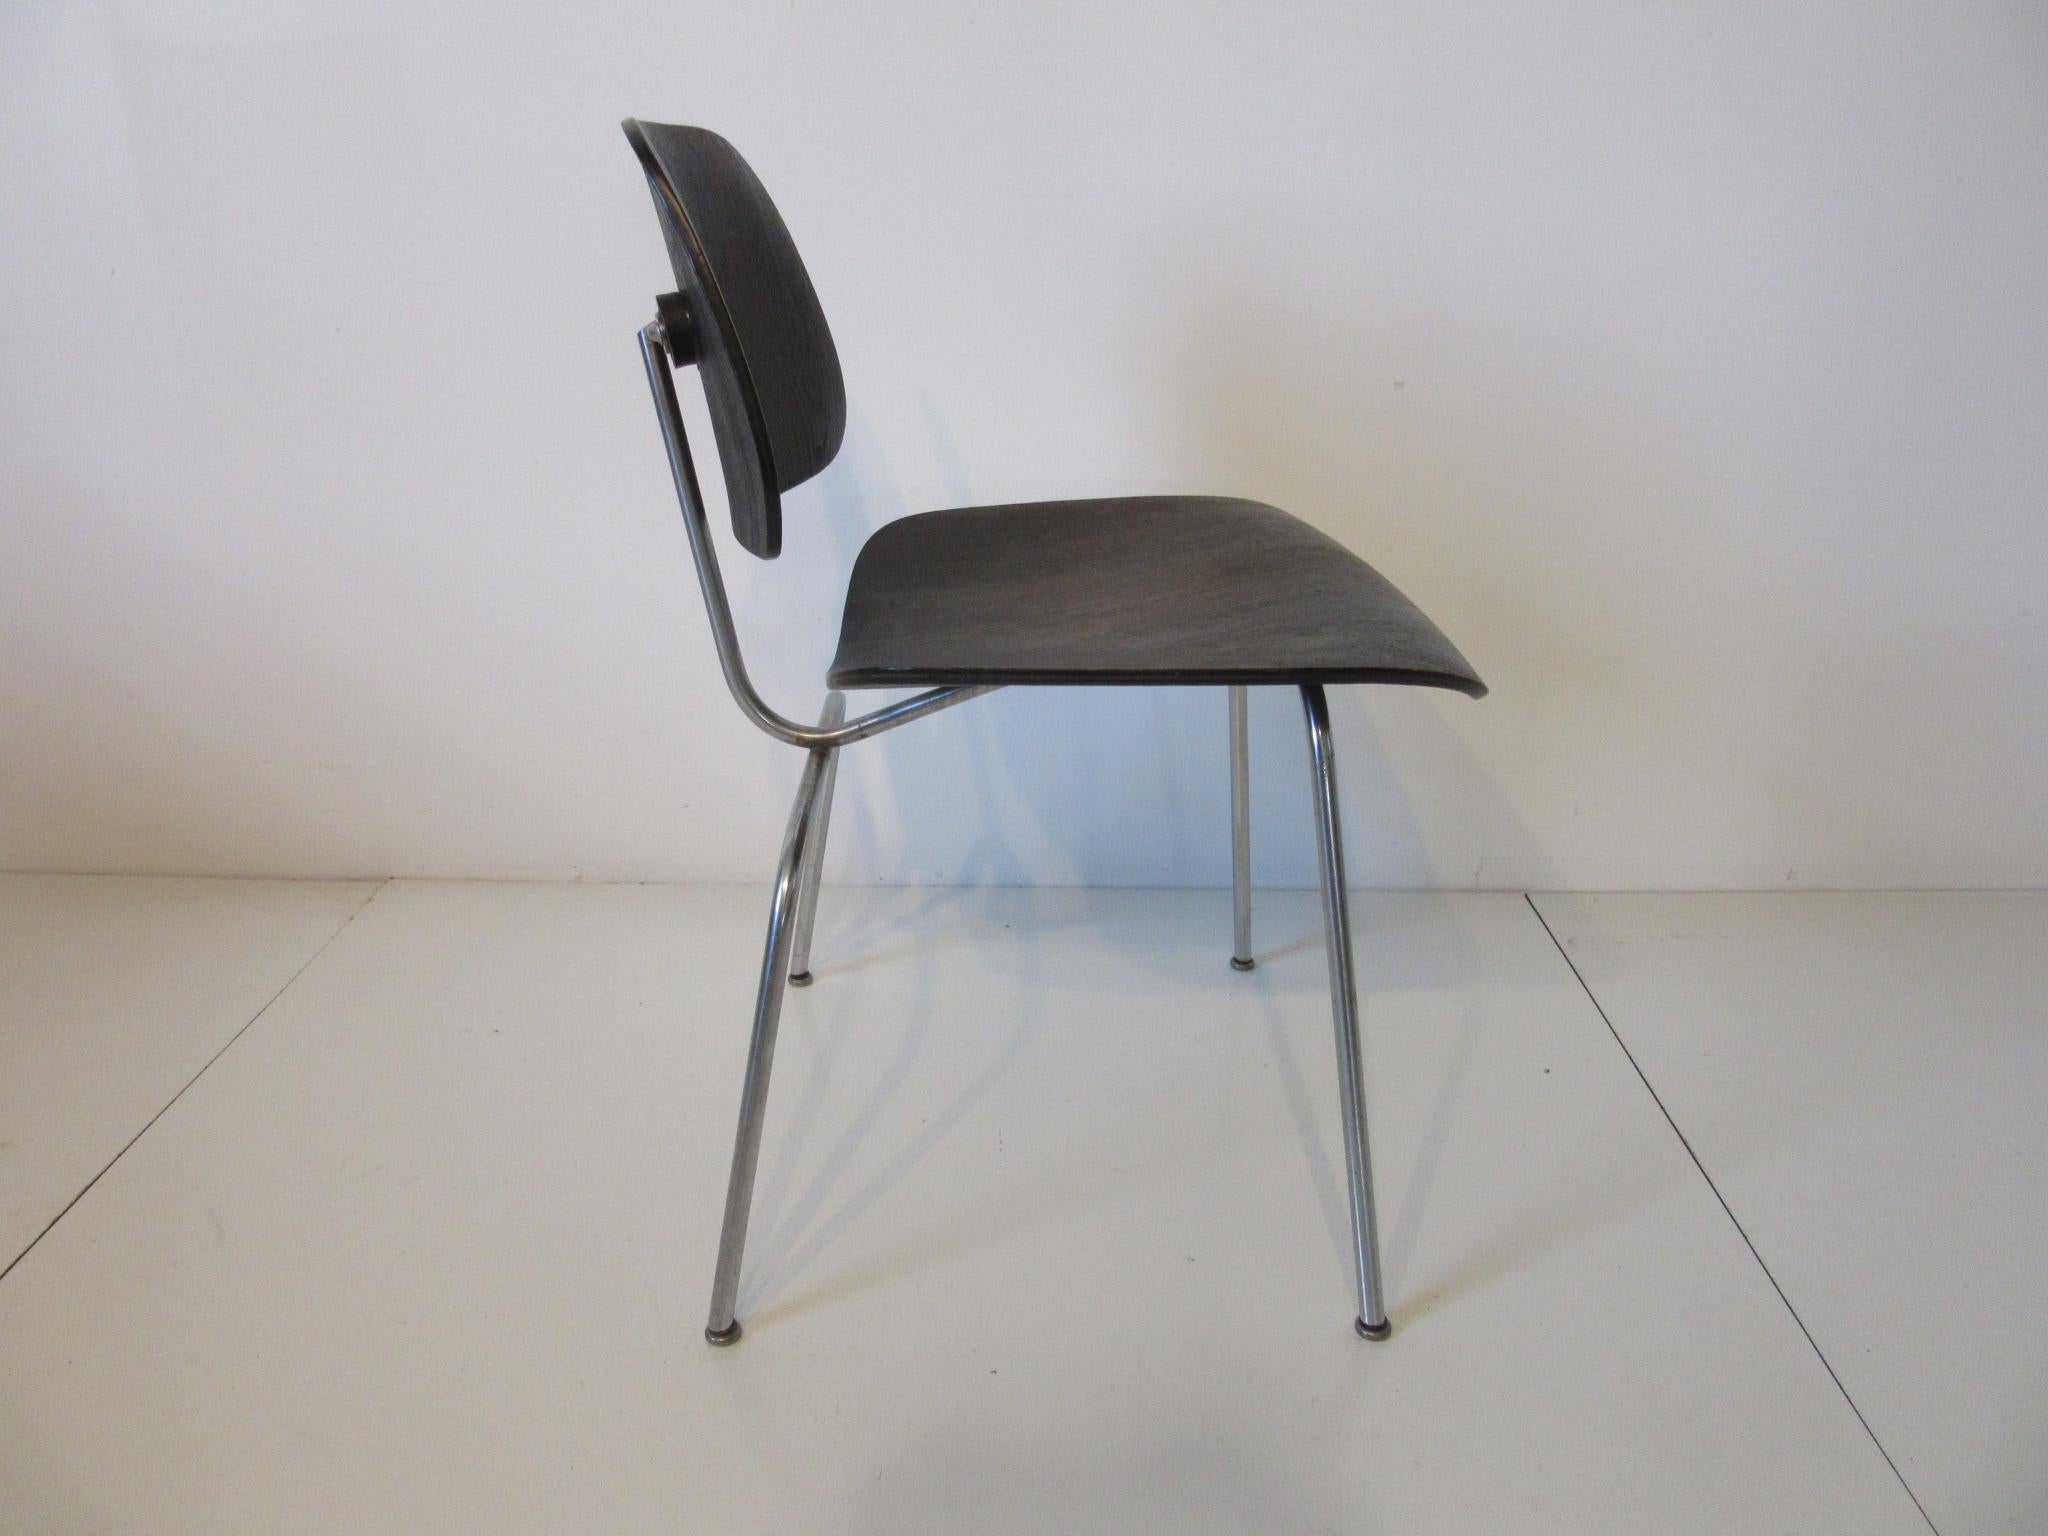 Sitz und Rückenlehne aus schwarzem, anilingefärbtem Holz, DCM (dining chair metal), verchromter Metallrahmen, kuppelförmige, stille Fußpads und frühes Folienetikett. Herman Miller Label entworfen von Charles Eames.